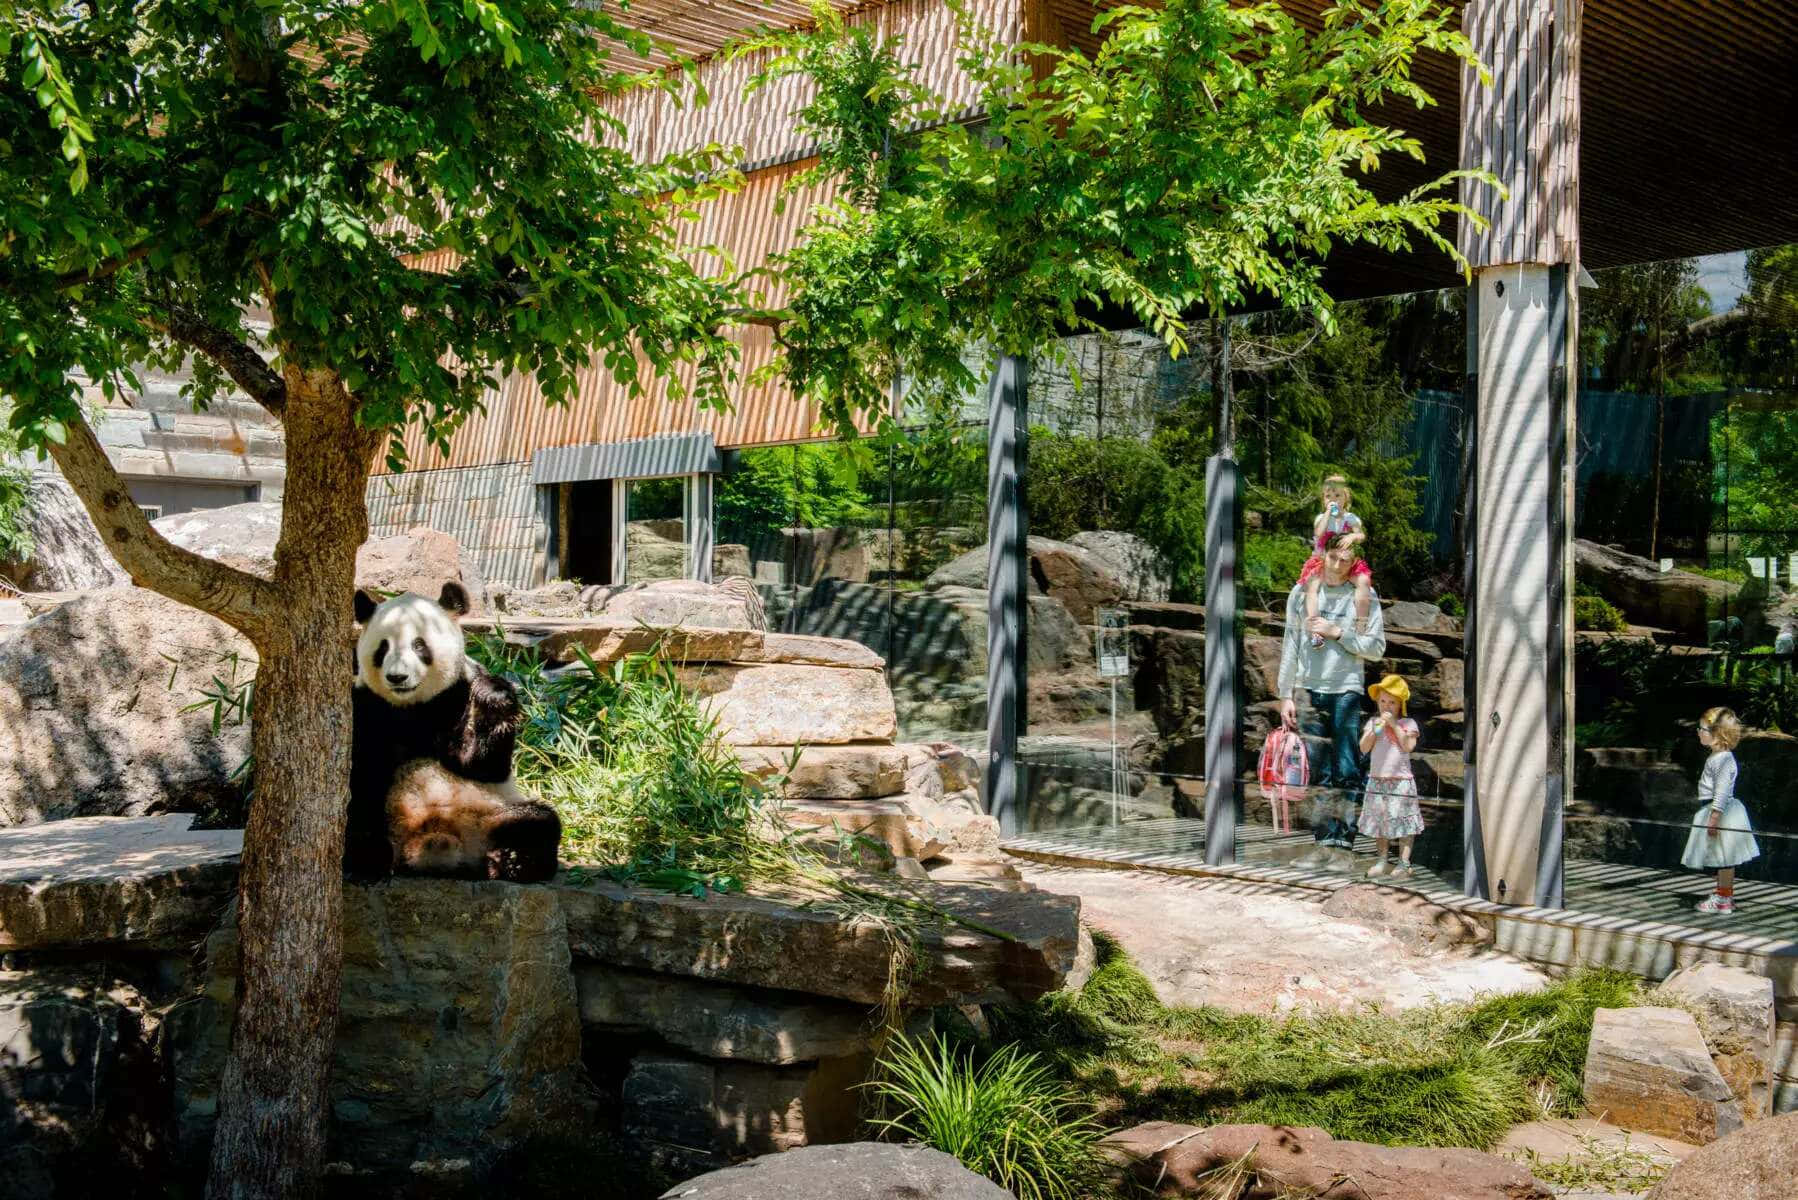 Giant Panda Adelaide Zoo Enclosure Wallpaper